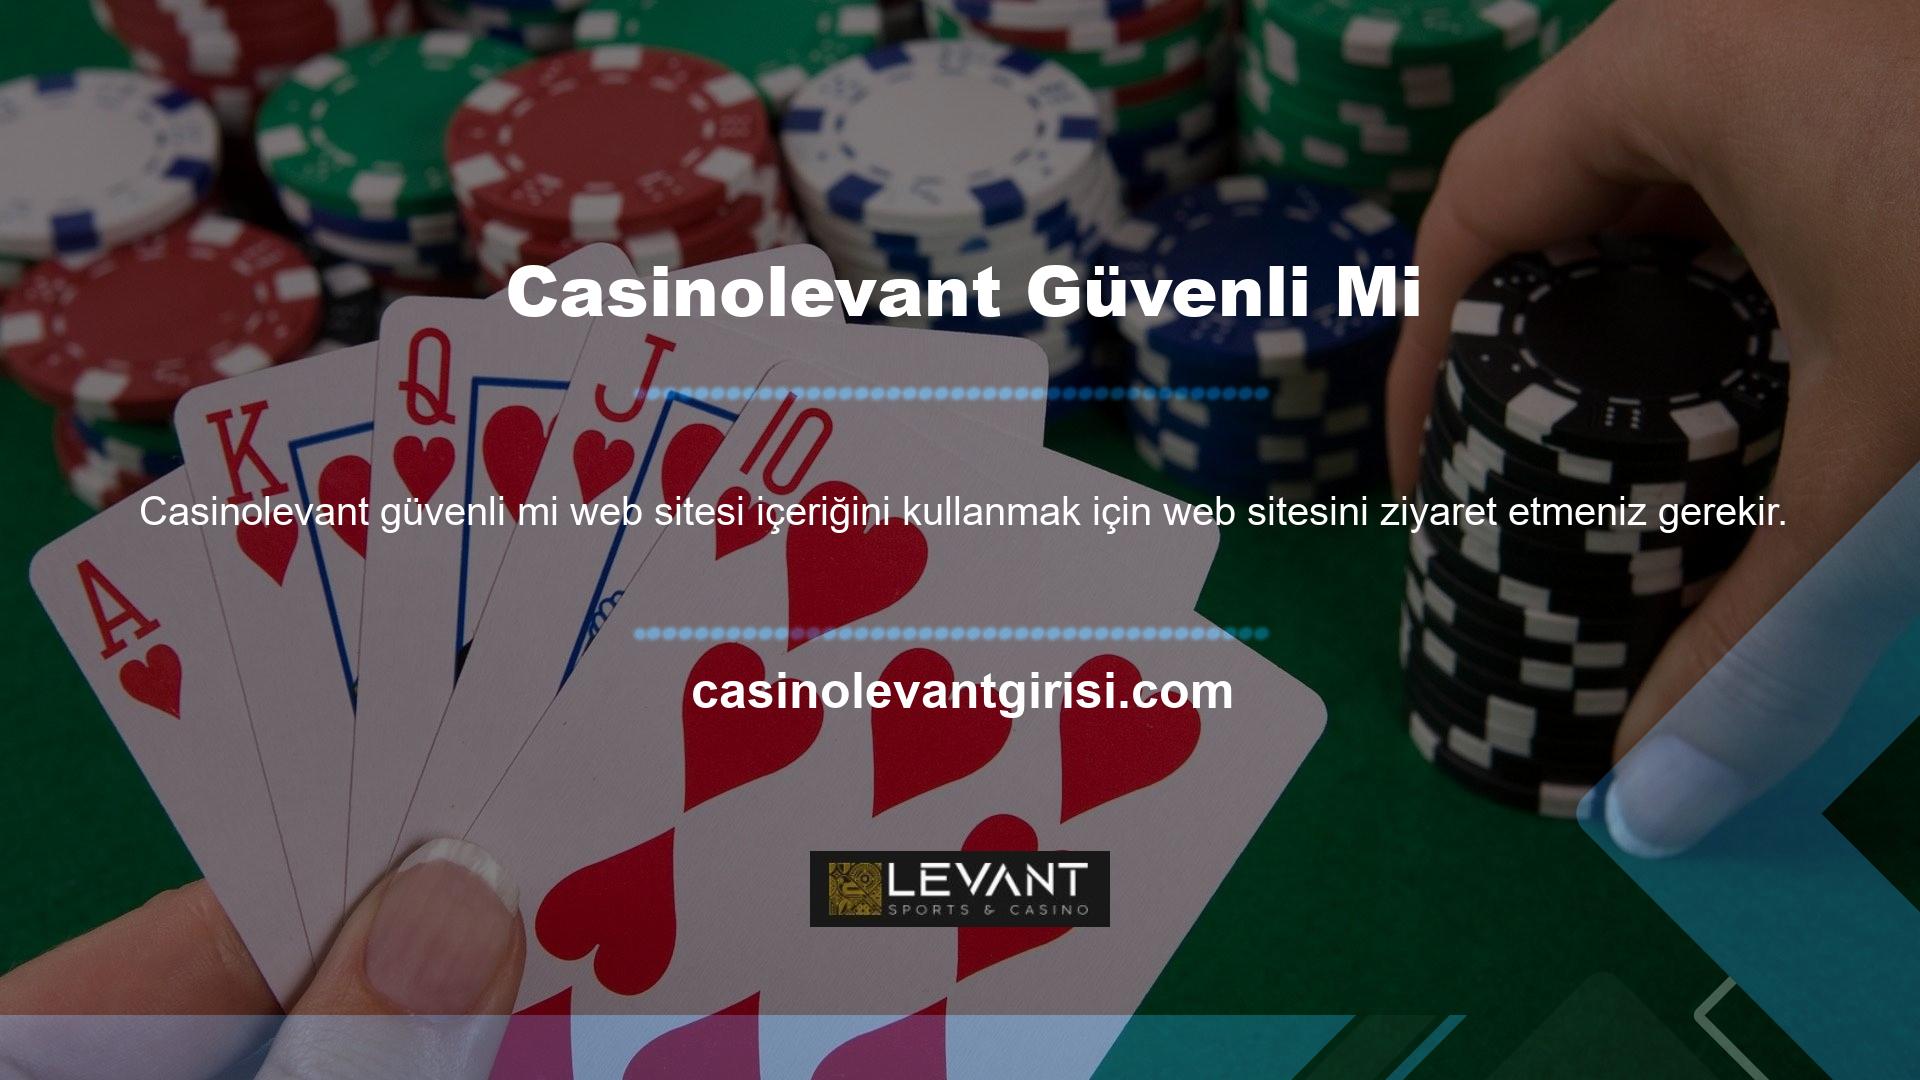 Casinolevant canlı destek hattı güvenilirdir ve birçok oyuncu tarafından tercih edilmektedir